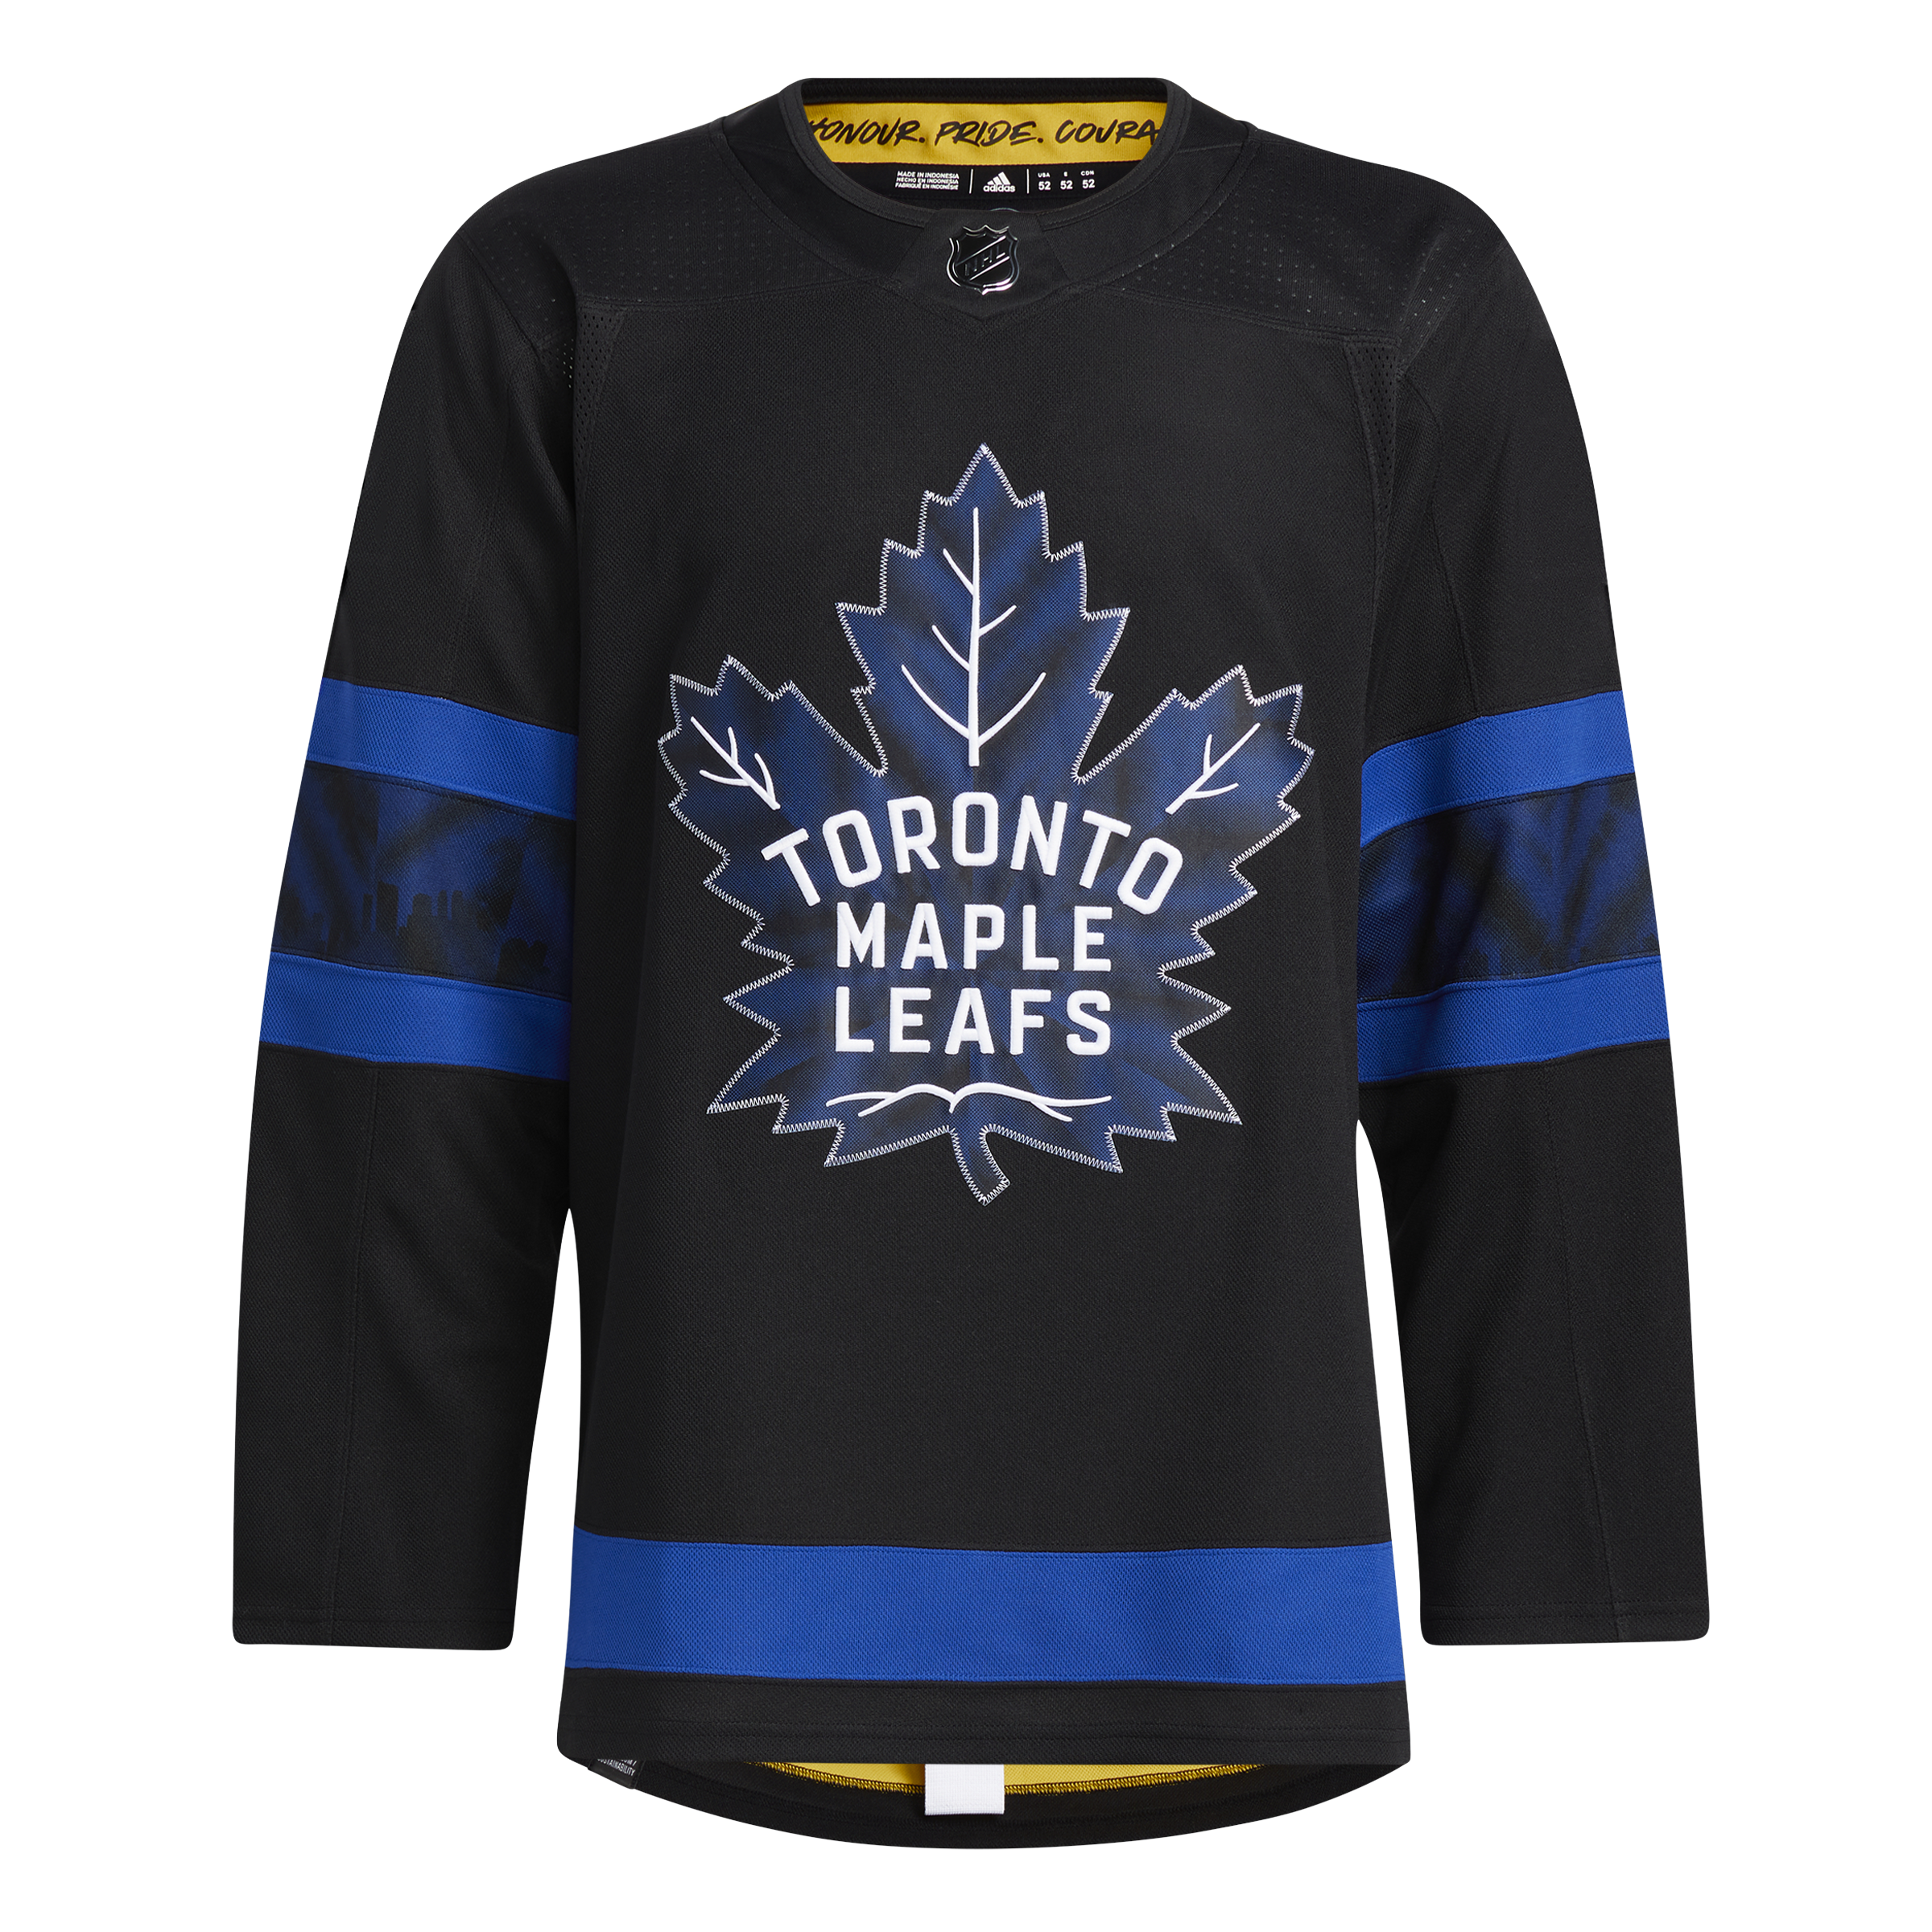 Sportsnet - This Maple Leafs x Raptors jersey is 🔥 📸